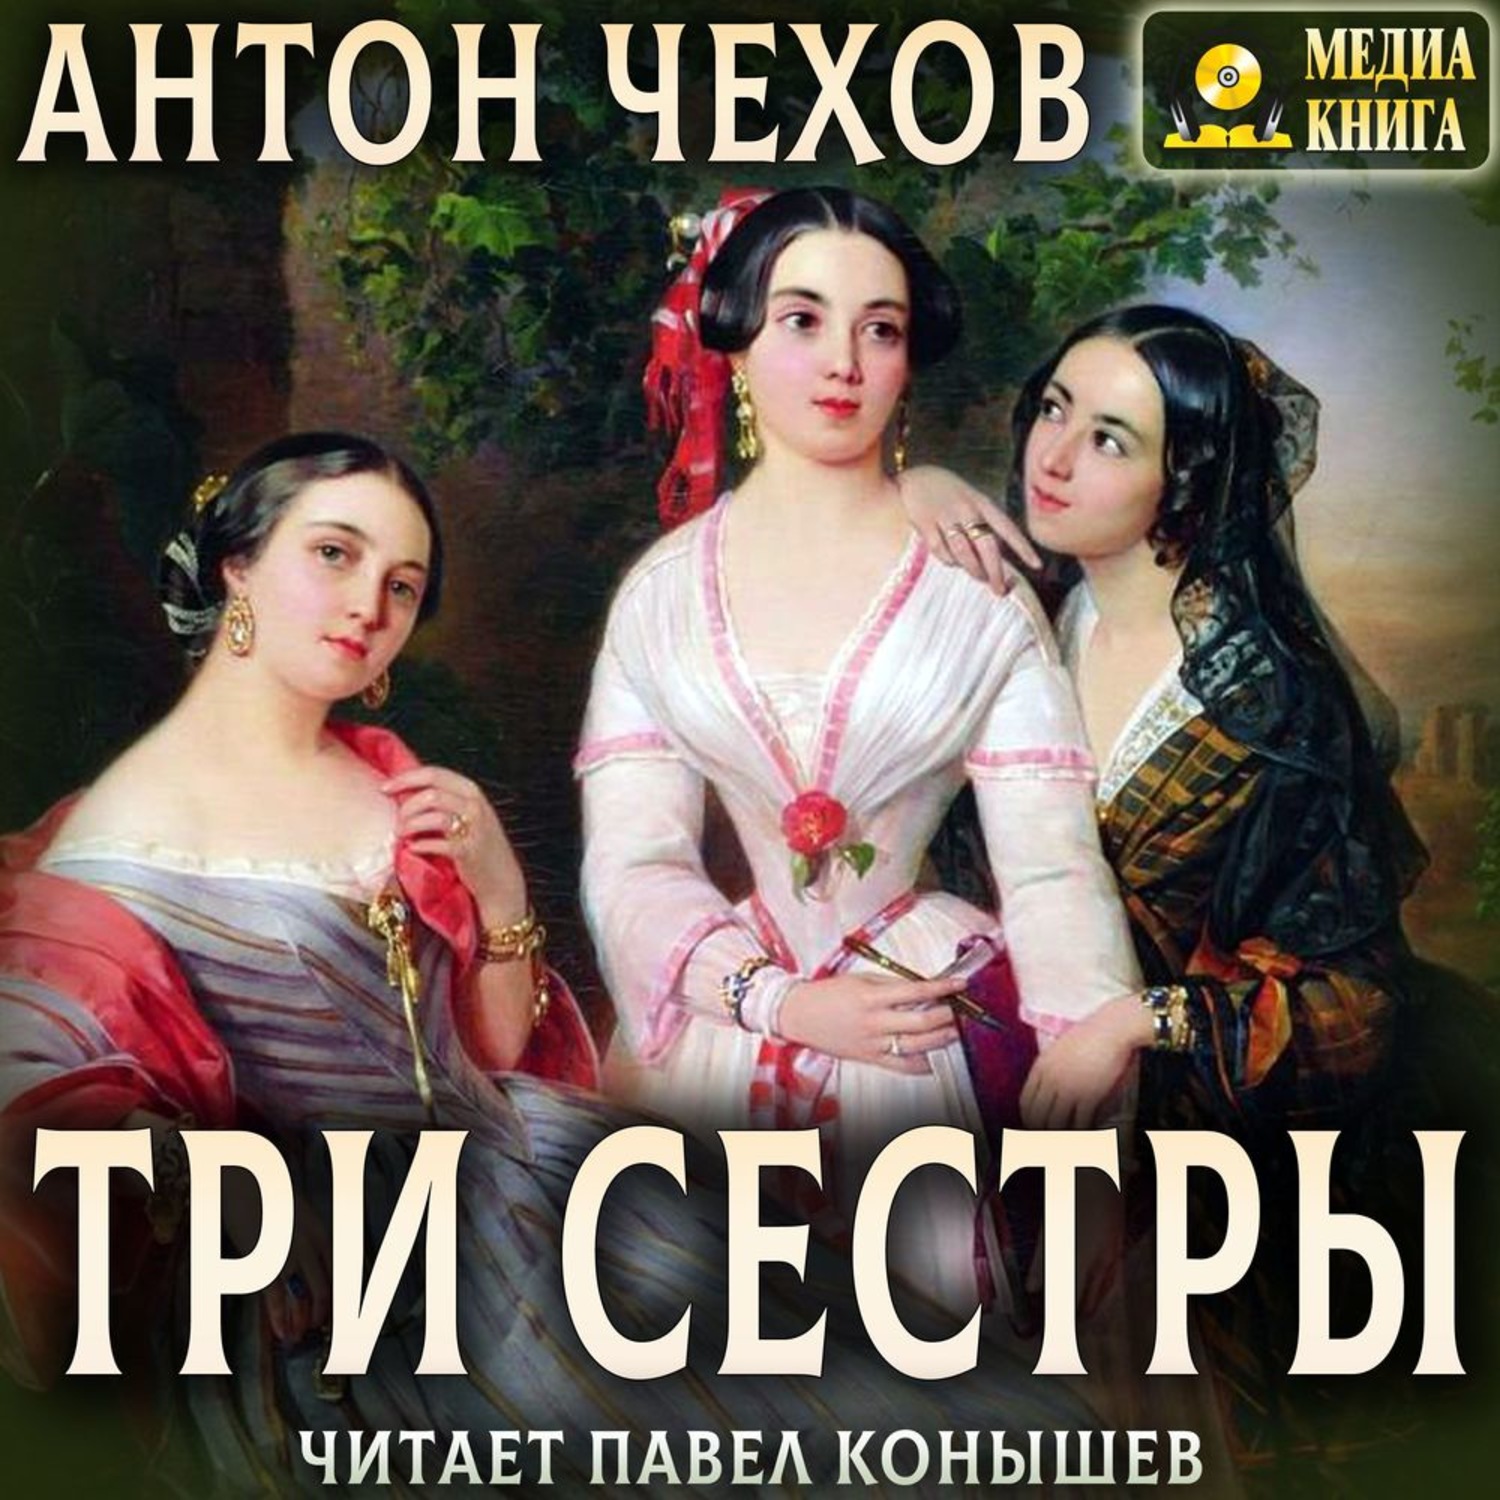 Произведение сестры. Чехов пьеса три сестры. Три сестры Чехов обложка. А П Чехов три сестры книга.